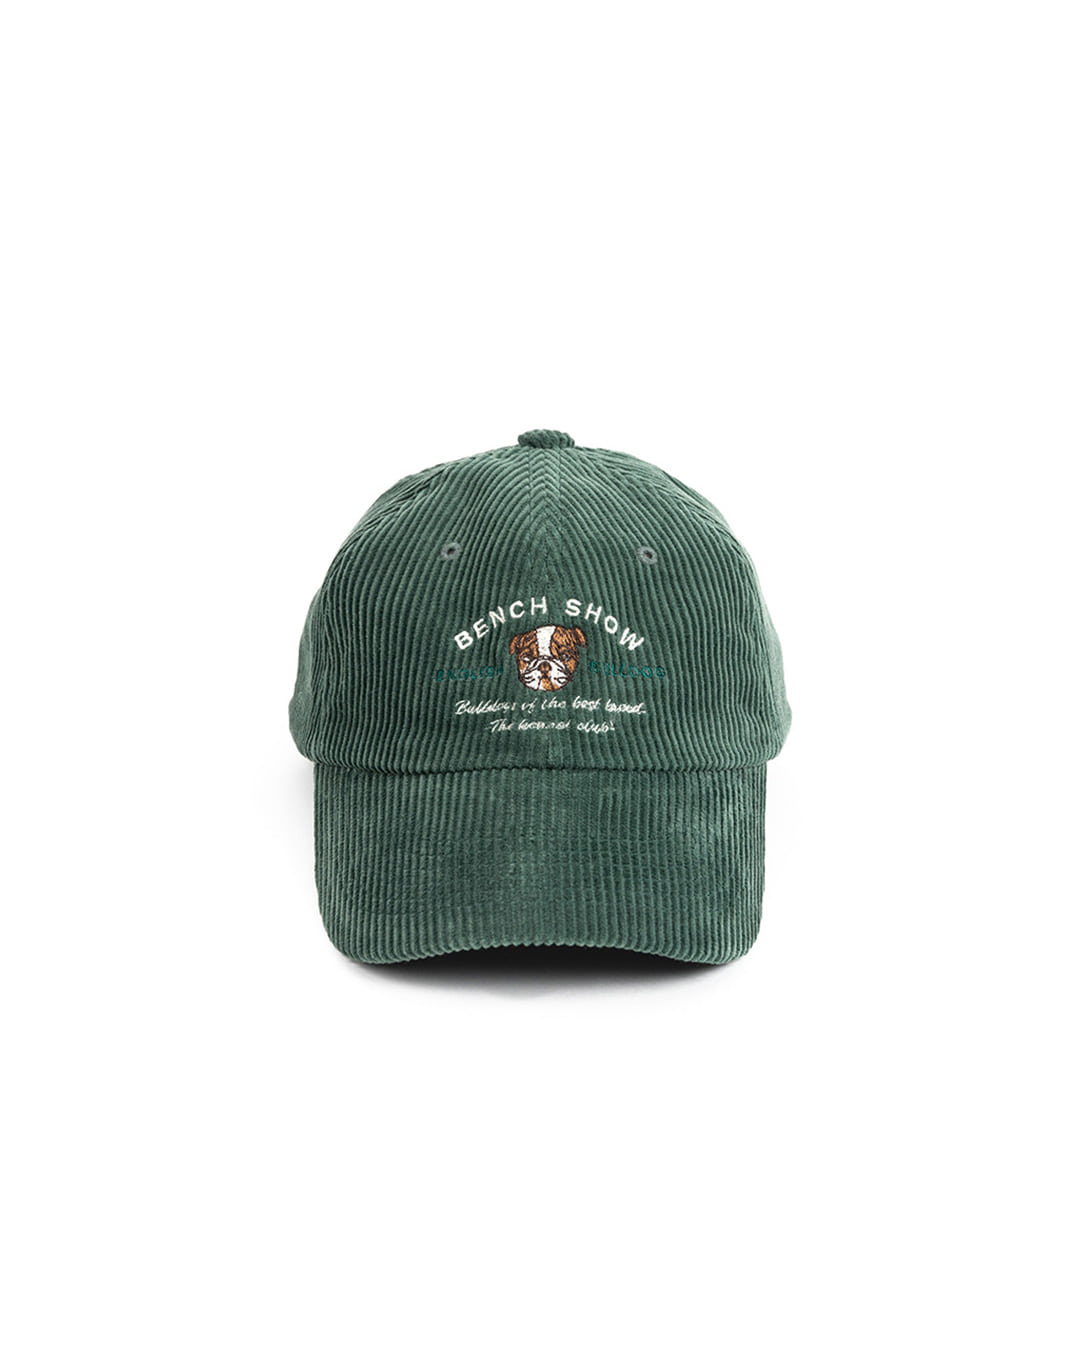 CORDUROY KENNEL CLUB CAP (green)